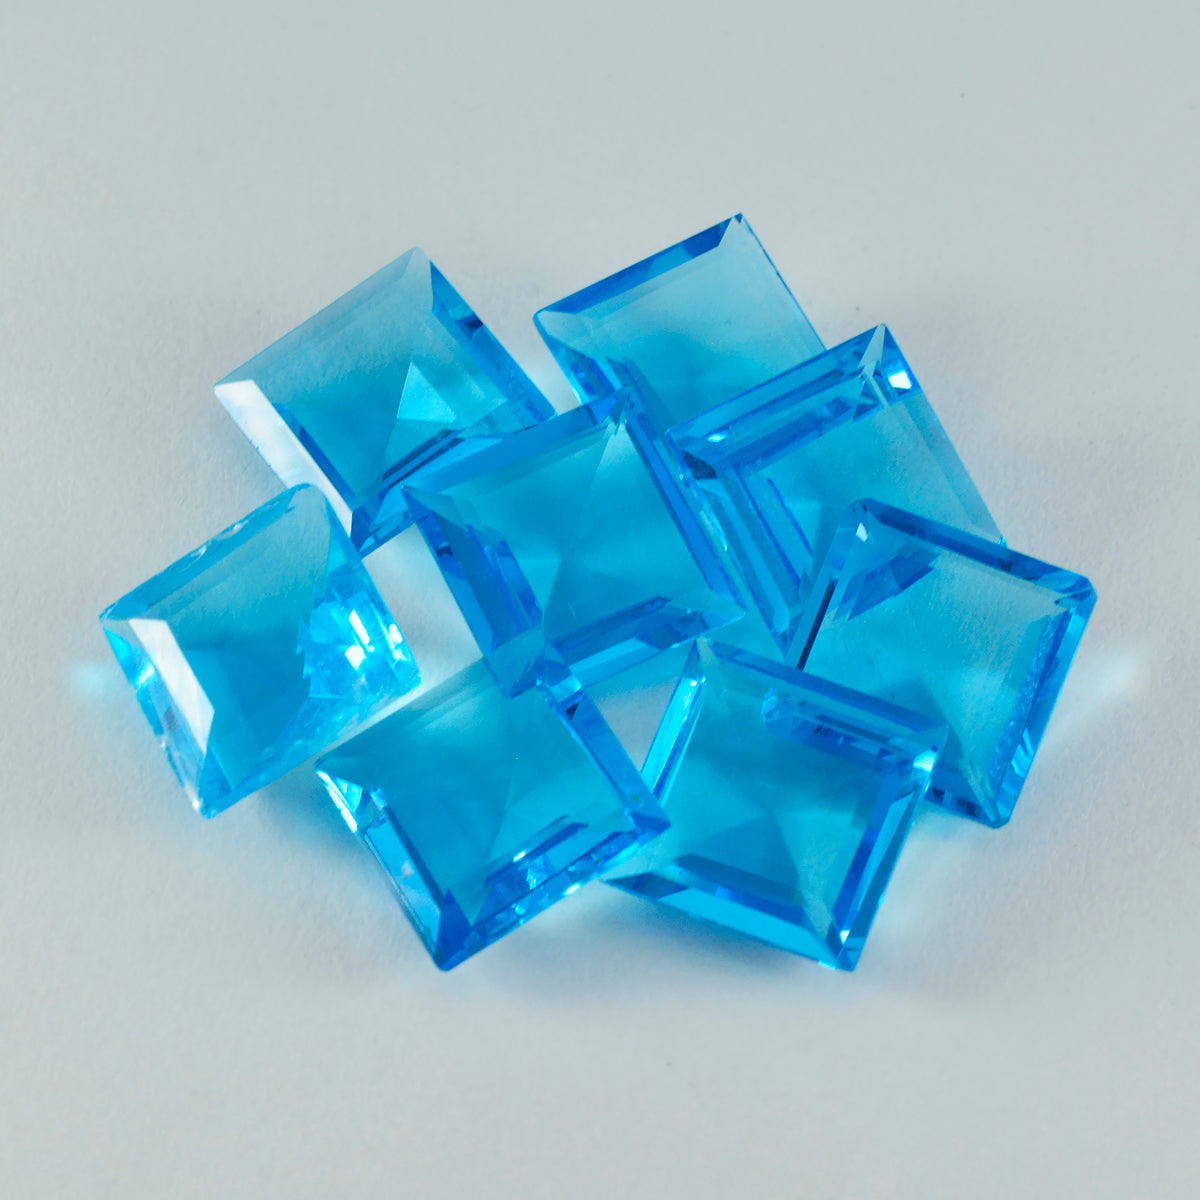 riyogems 1шт синий топаз cz ограненный 13x13 мм квадратной формы драгоценный камень удивительного качества